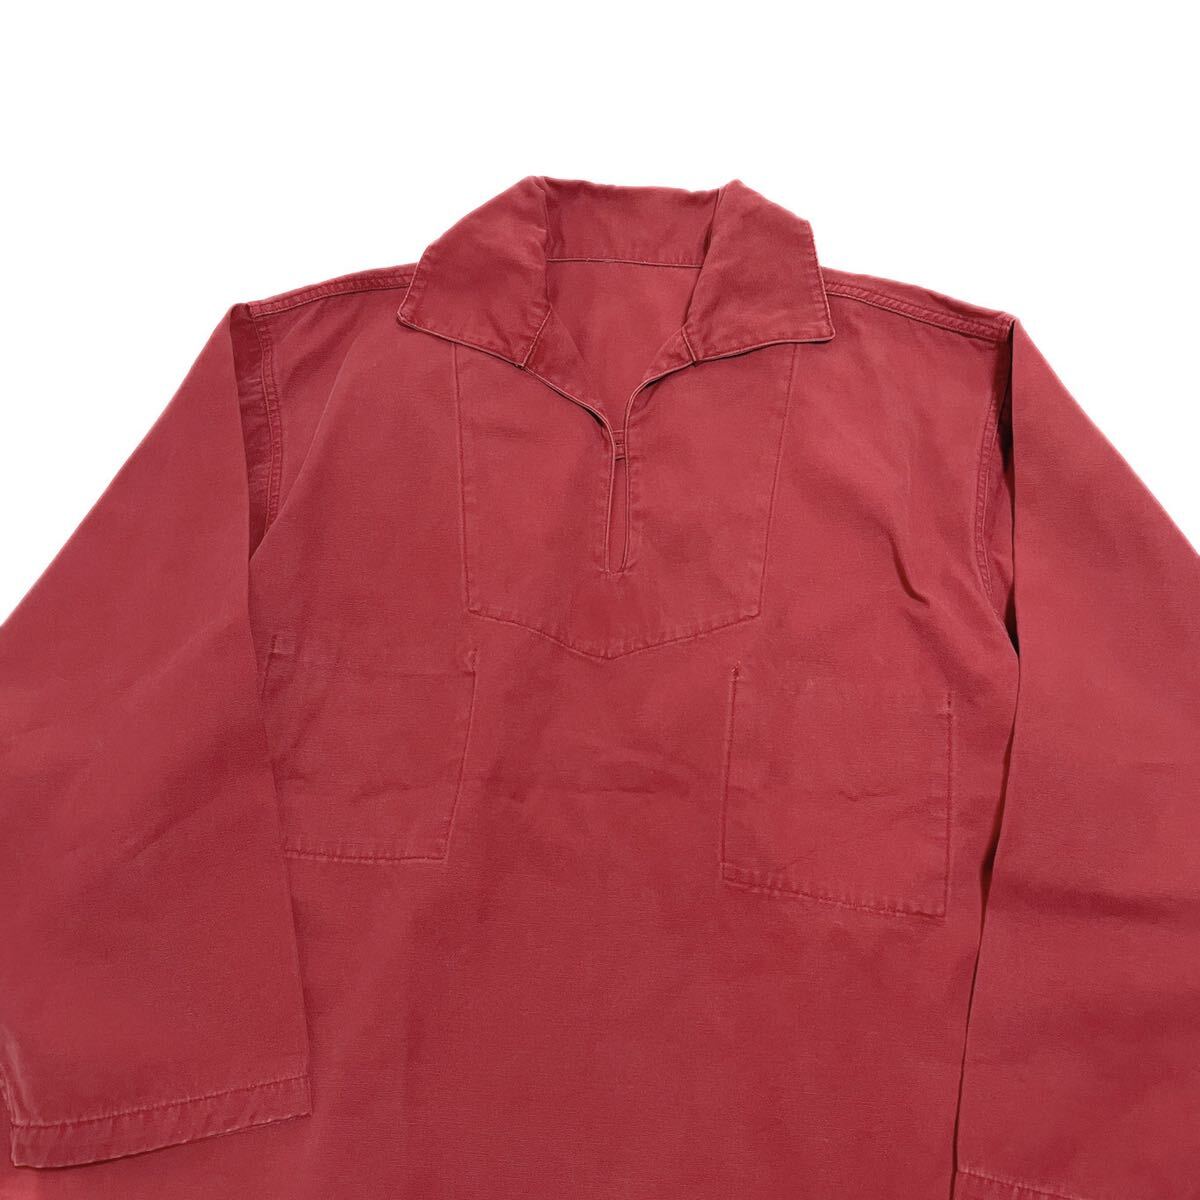 良品 フランス ヴィンテージ フィッシャーマン スモックジャケット 大きいサイズ シャツ フレンチワーク ワークジャケット_画像2